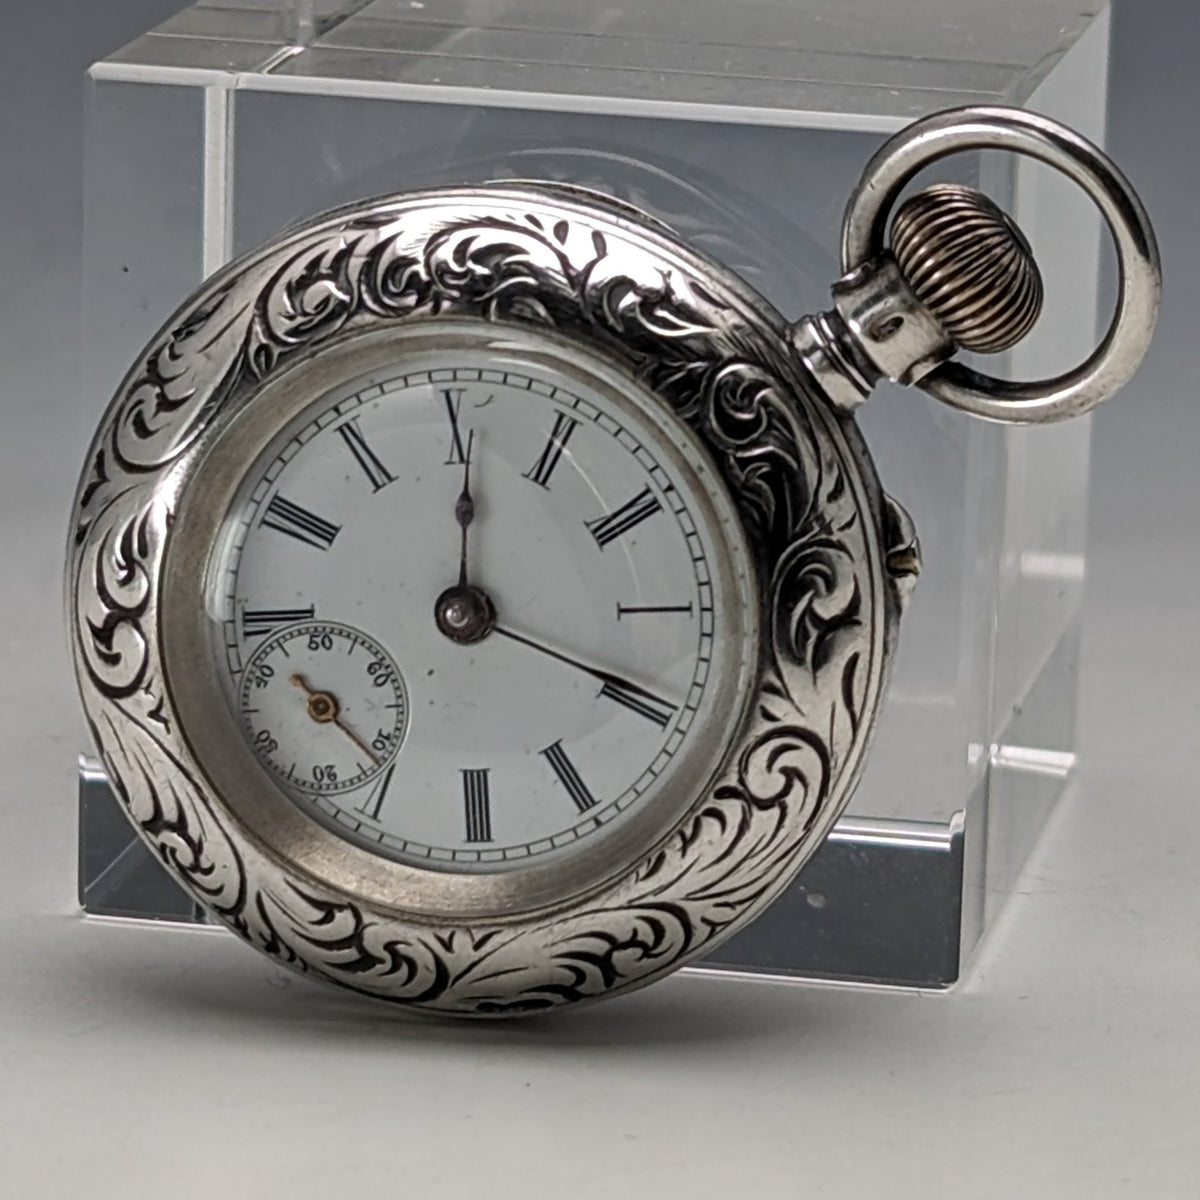 目立った傷や汚れのない美品機能1900年頃 アンティーク スイス製 小型懐中時計 彫刻銀側ケース 動作良好